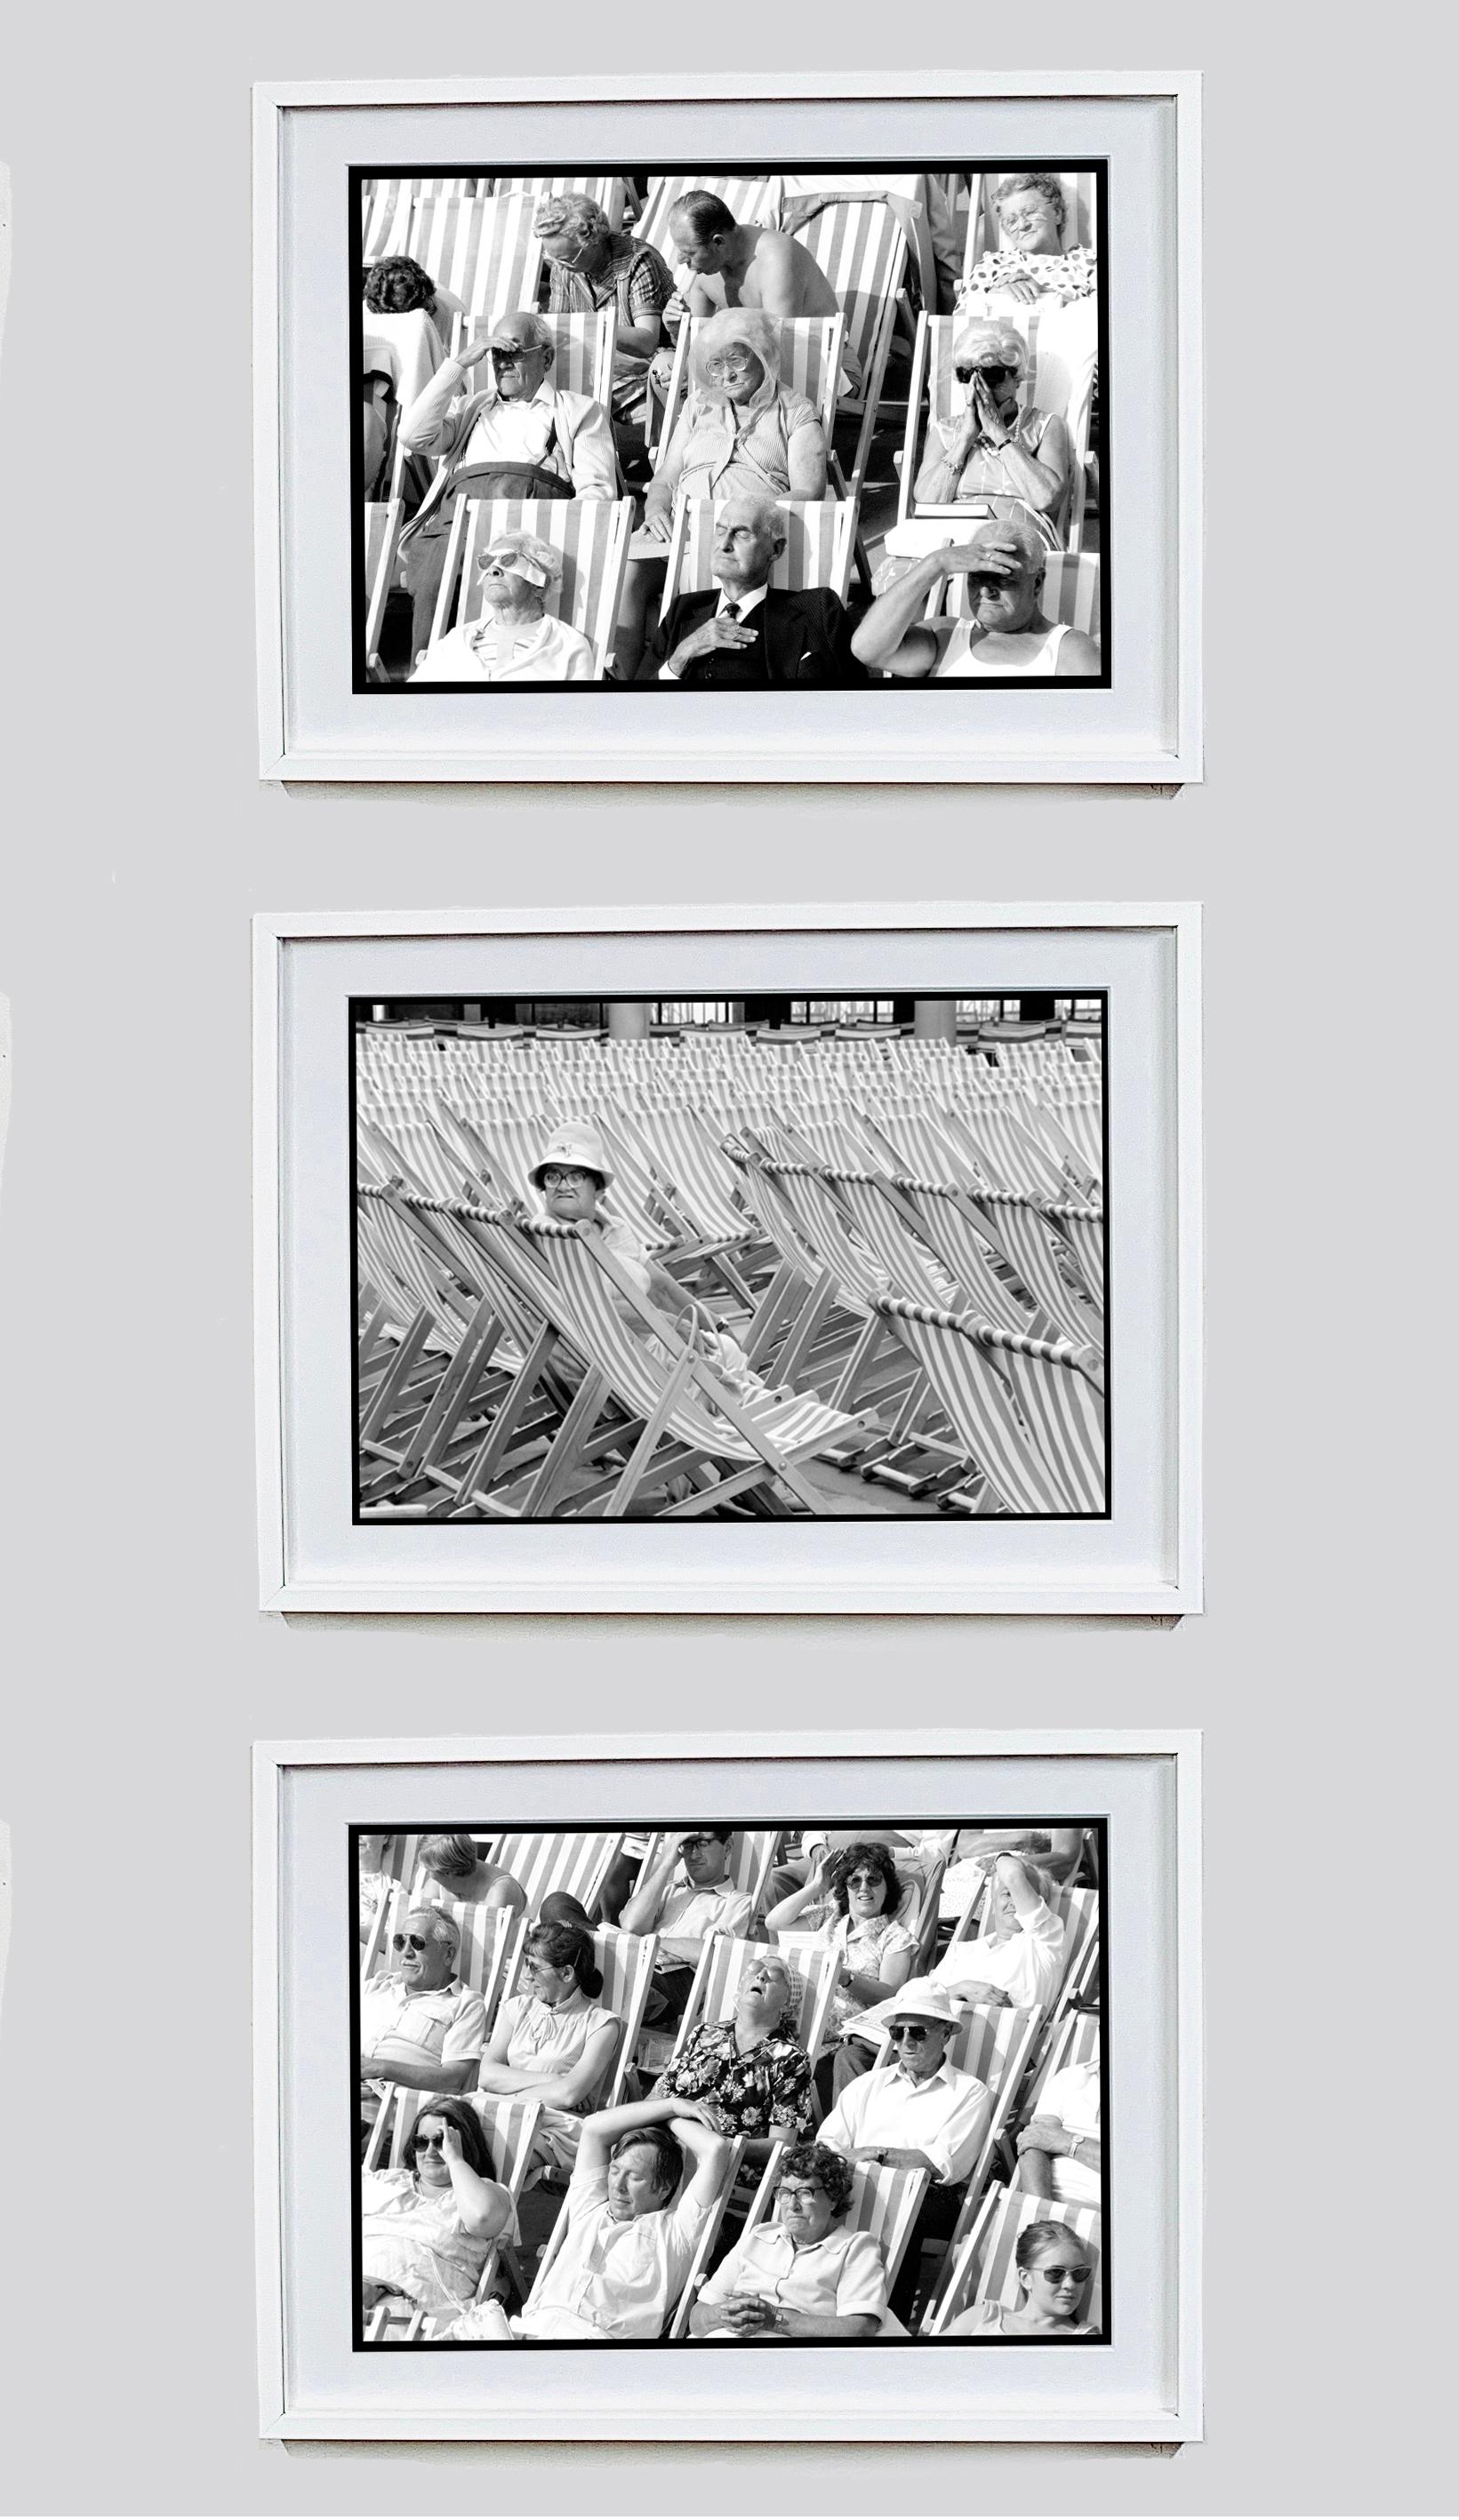 Bandstand I, Eastbourne, UK - Black and White Vintage Photography 5